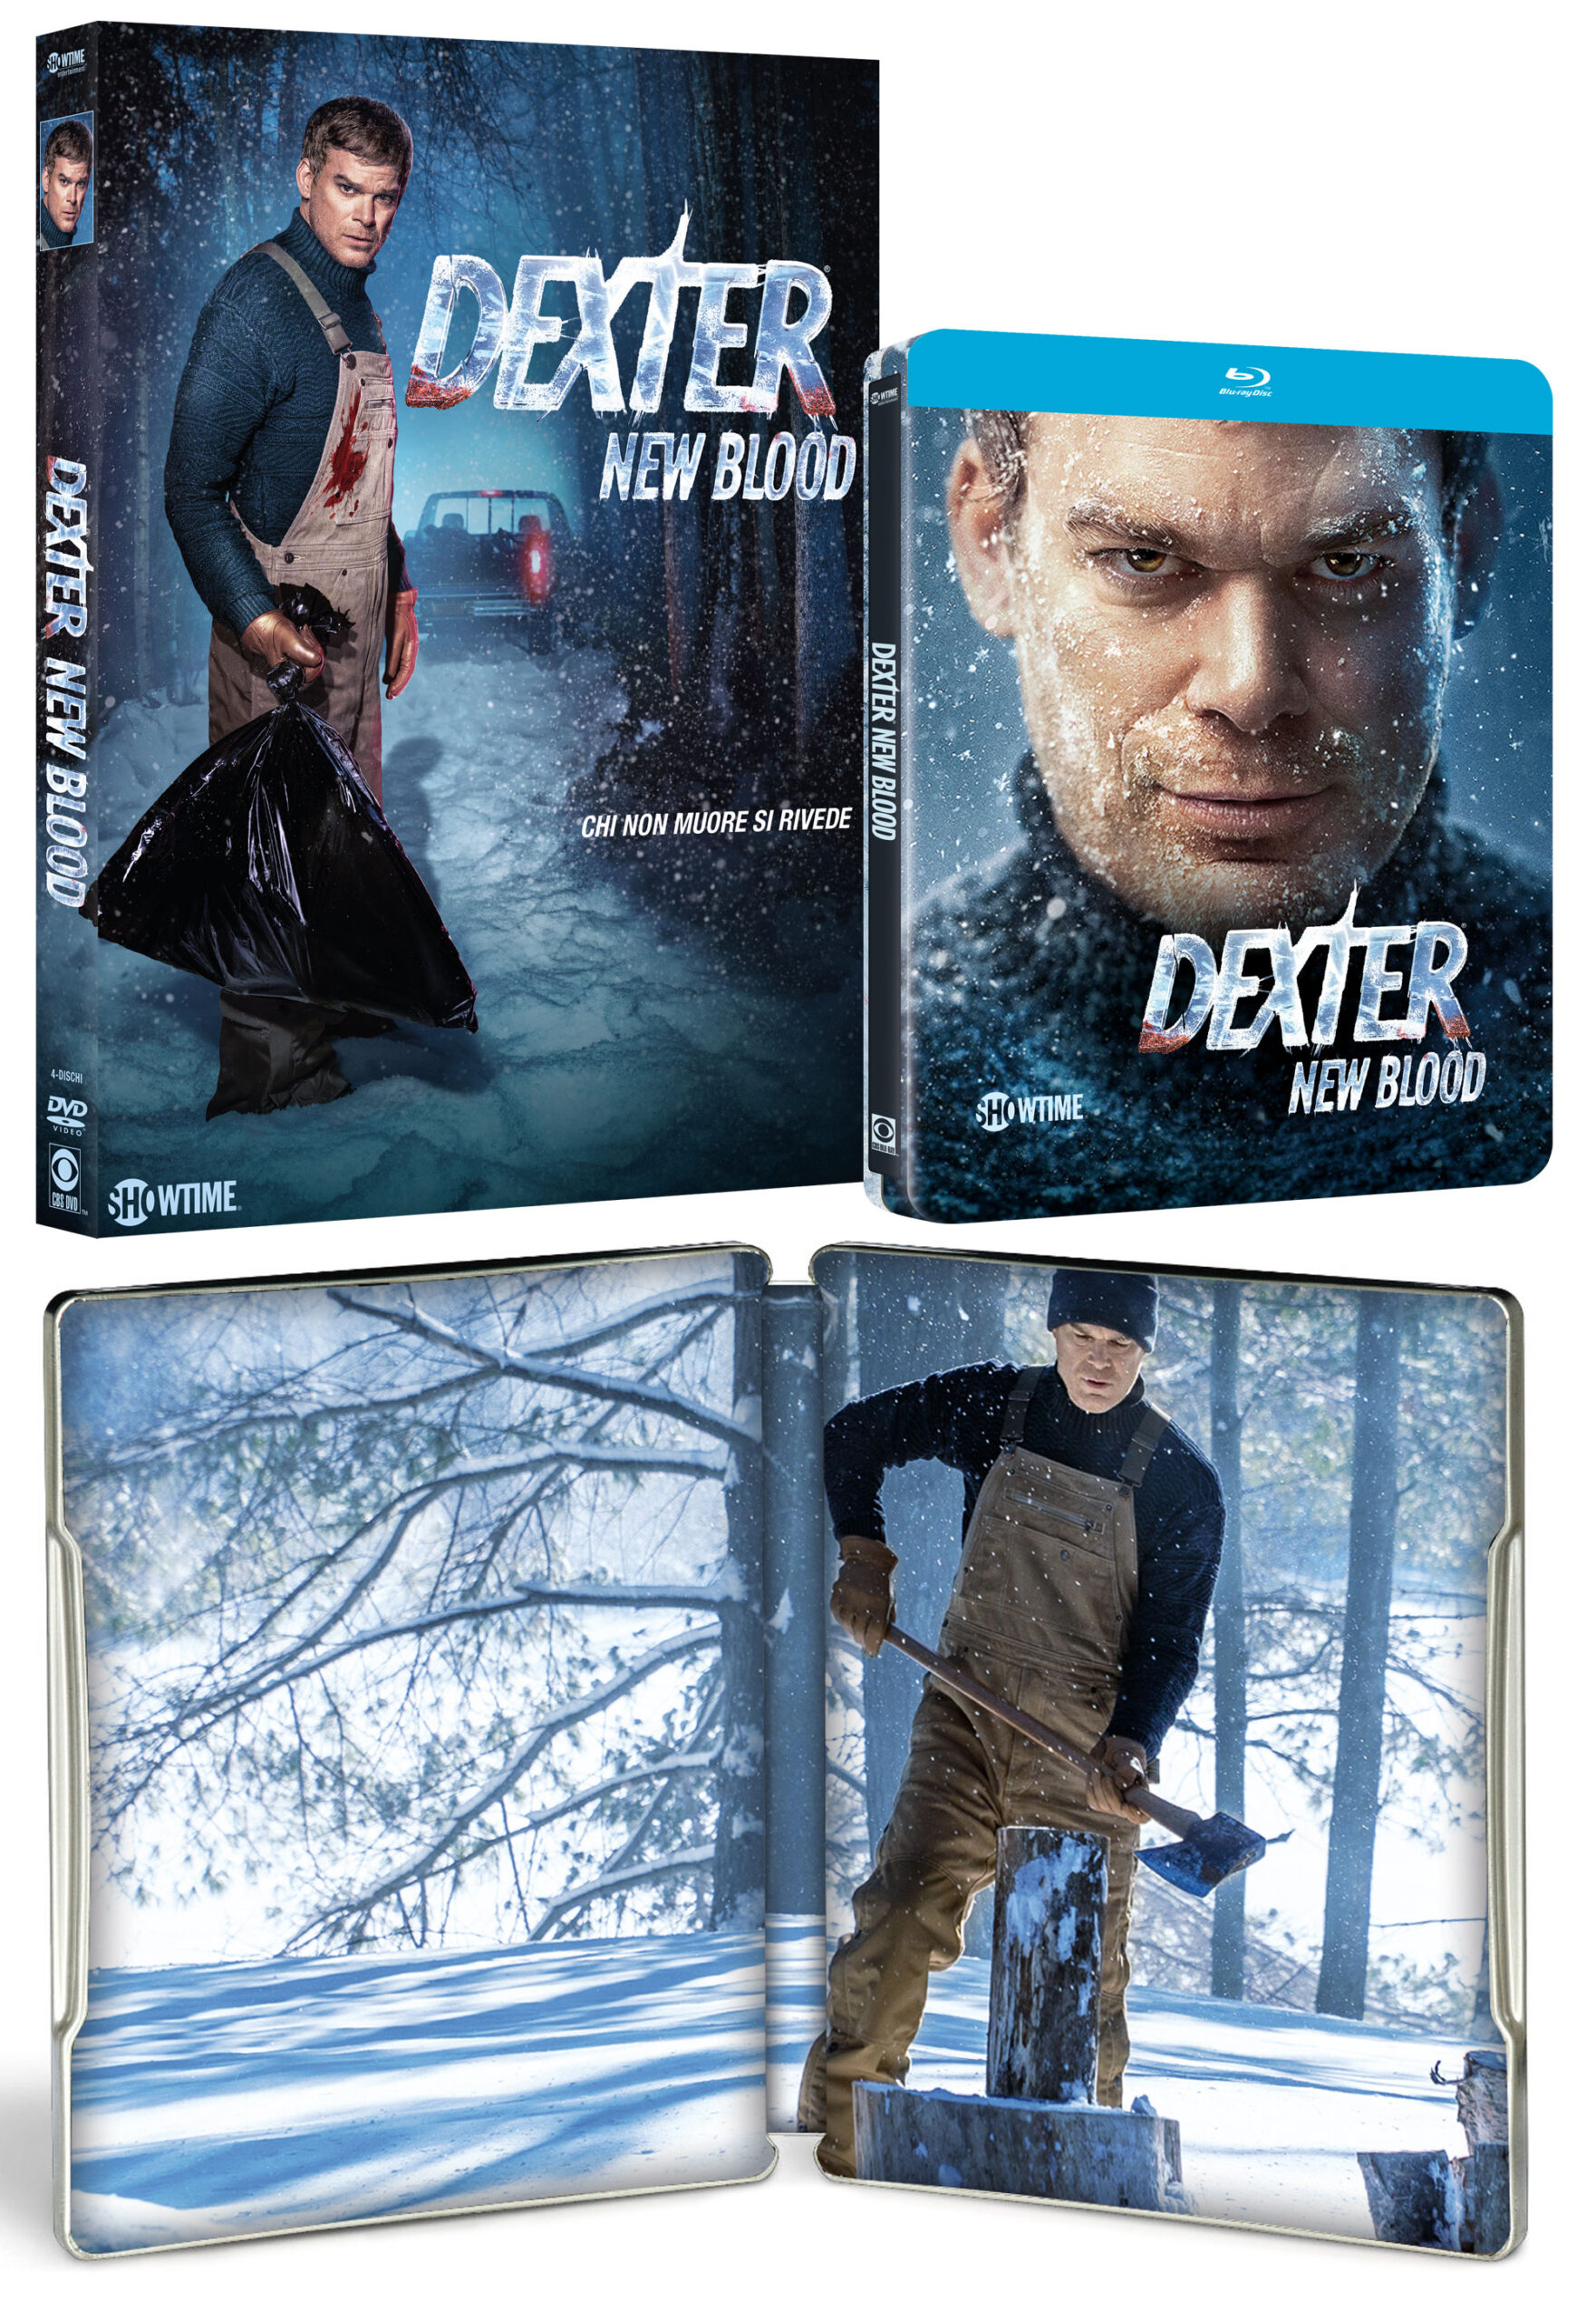 DEXTER: NEW BLOOD in DVD e Steelbook Blu-ray